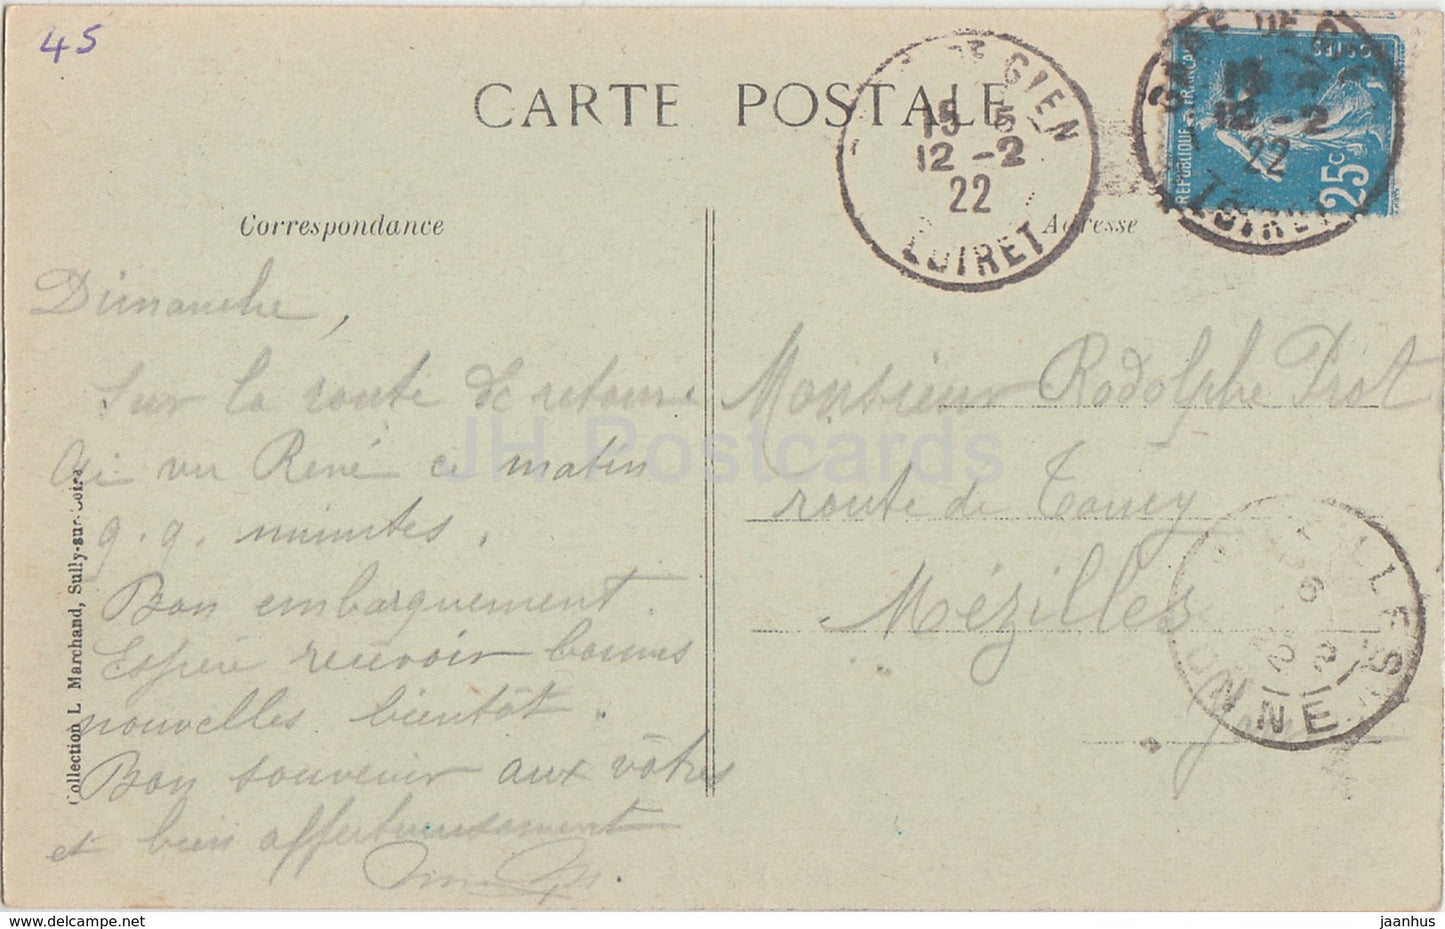 La Bussière - Le Chateau - château - 1922 - carte postale ancienne - France - occasion